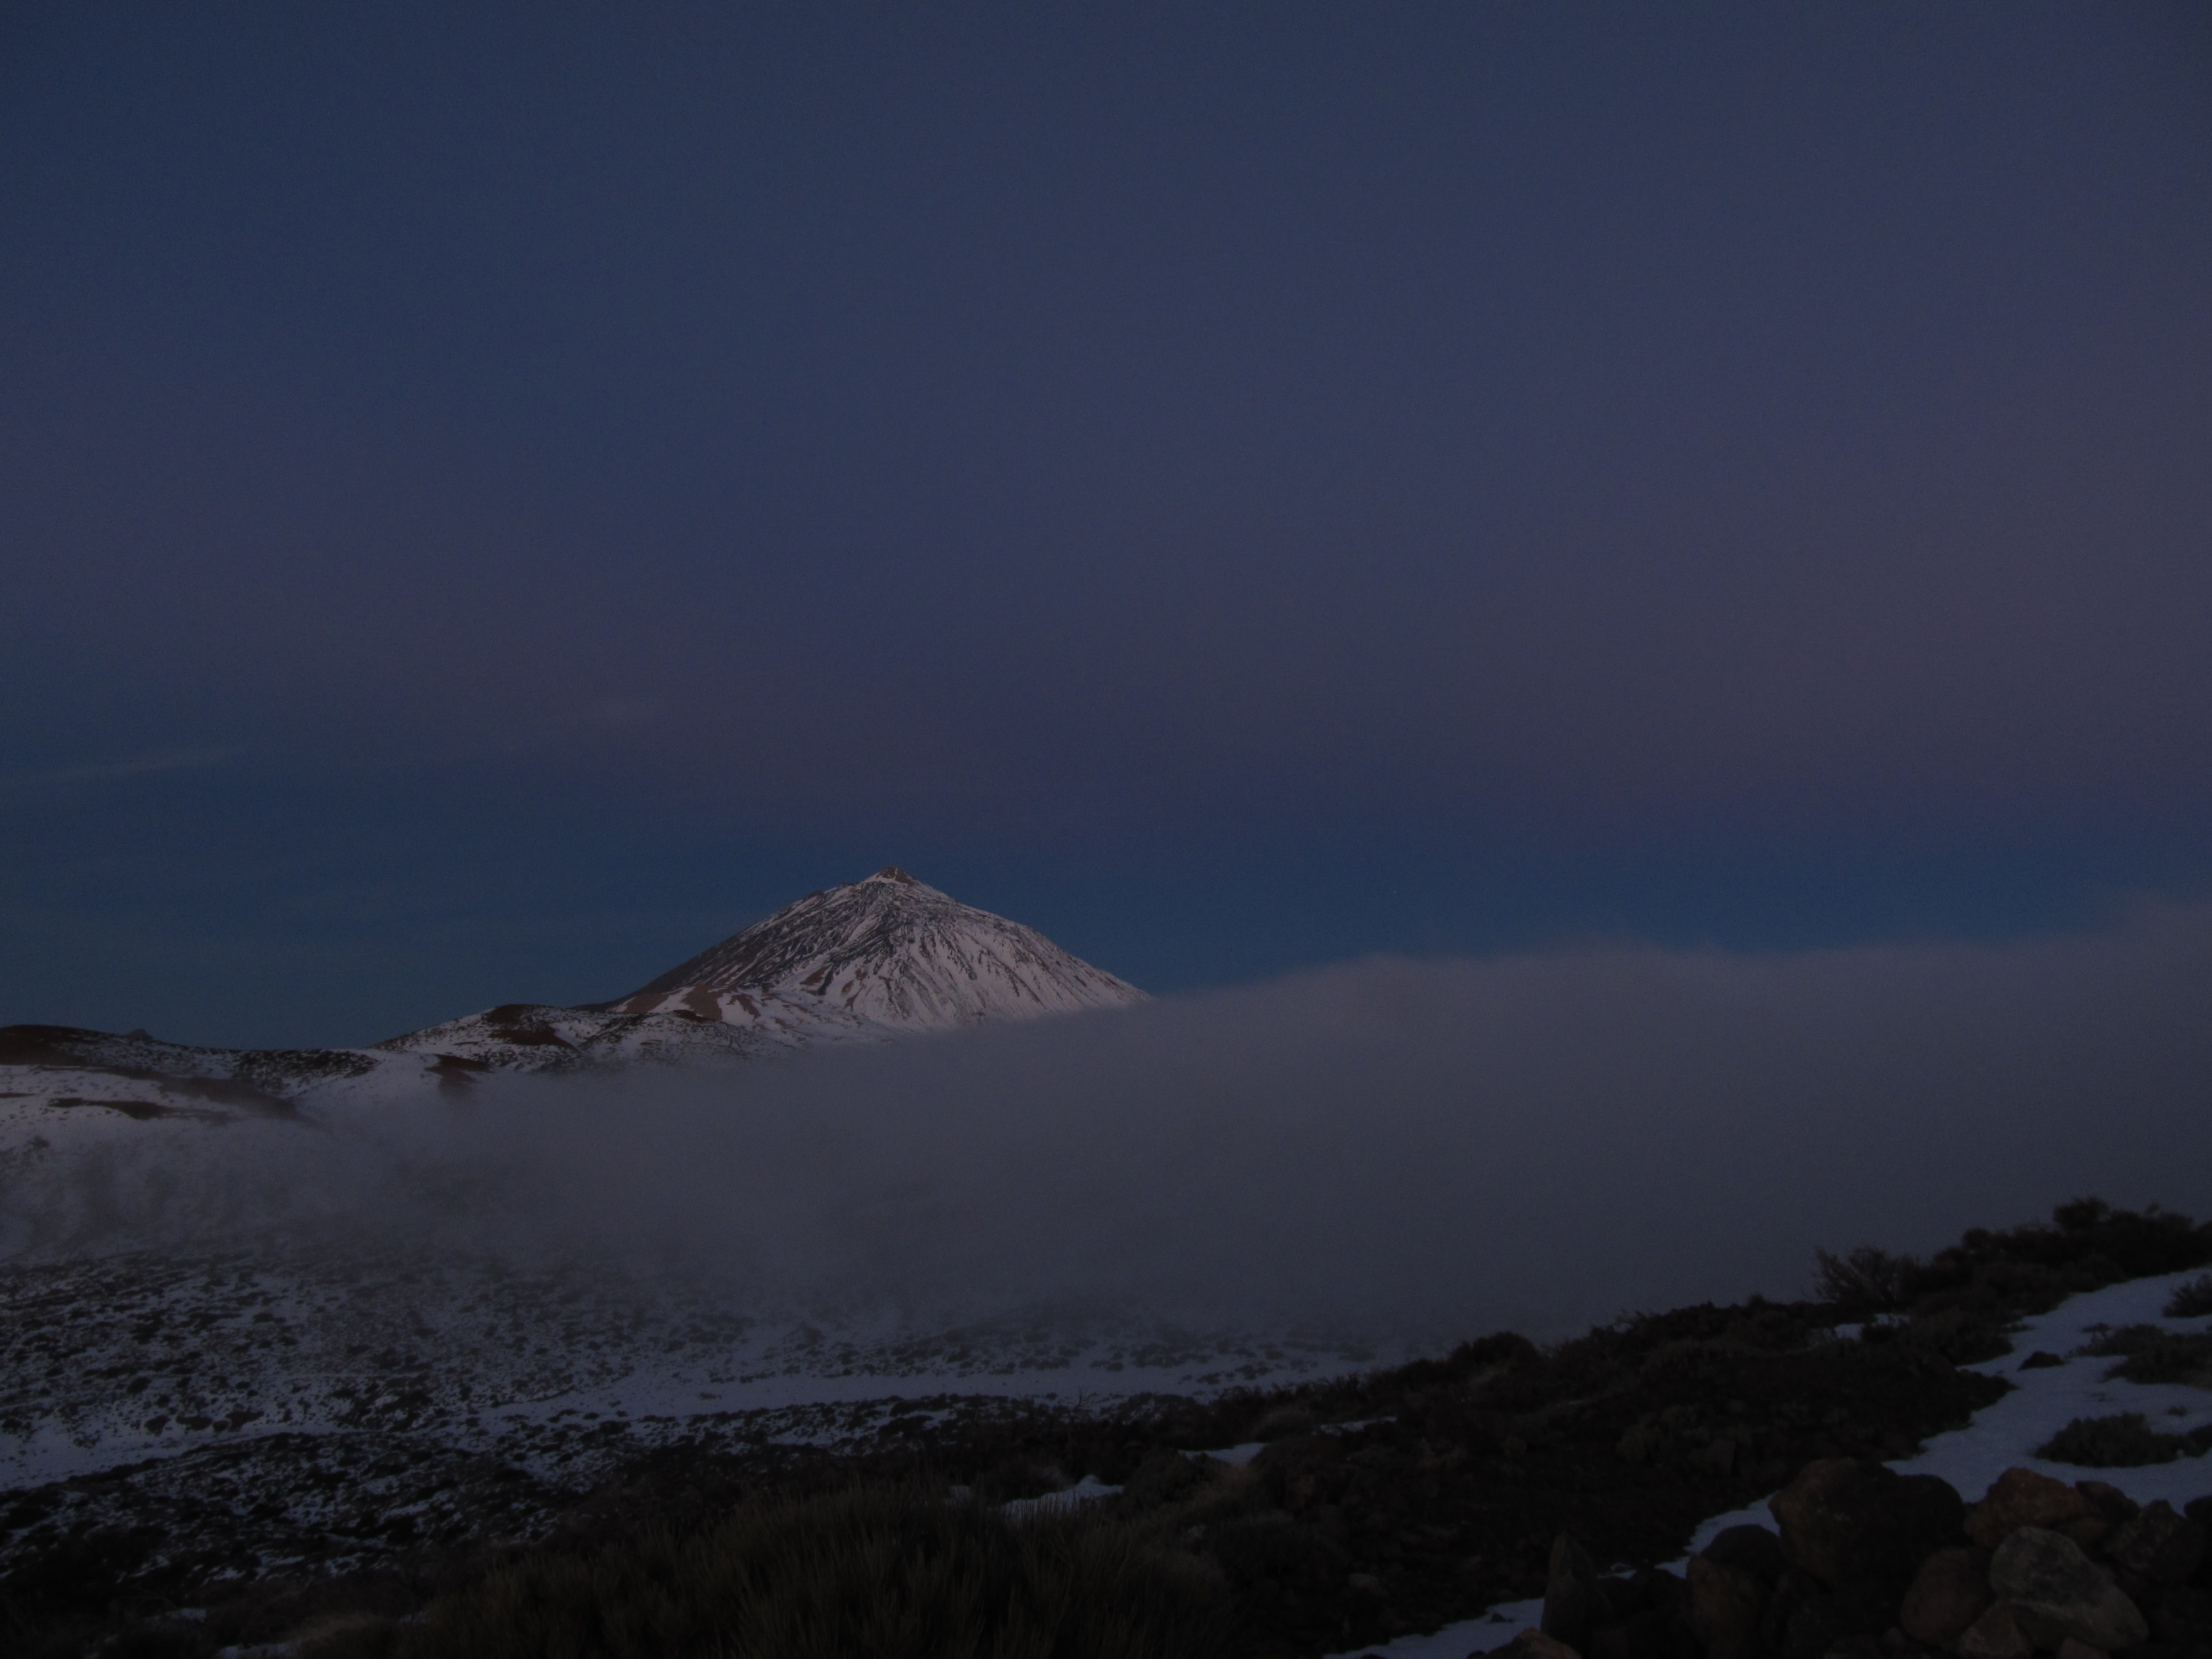 Mount Teide behond the cloud